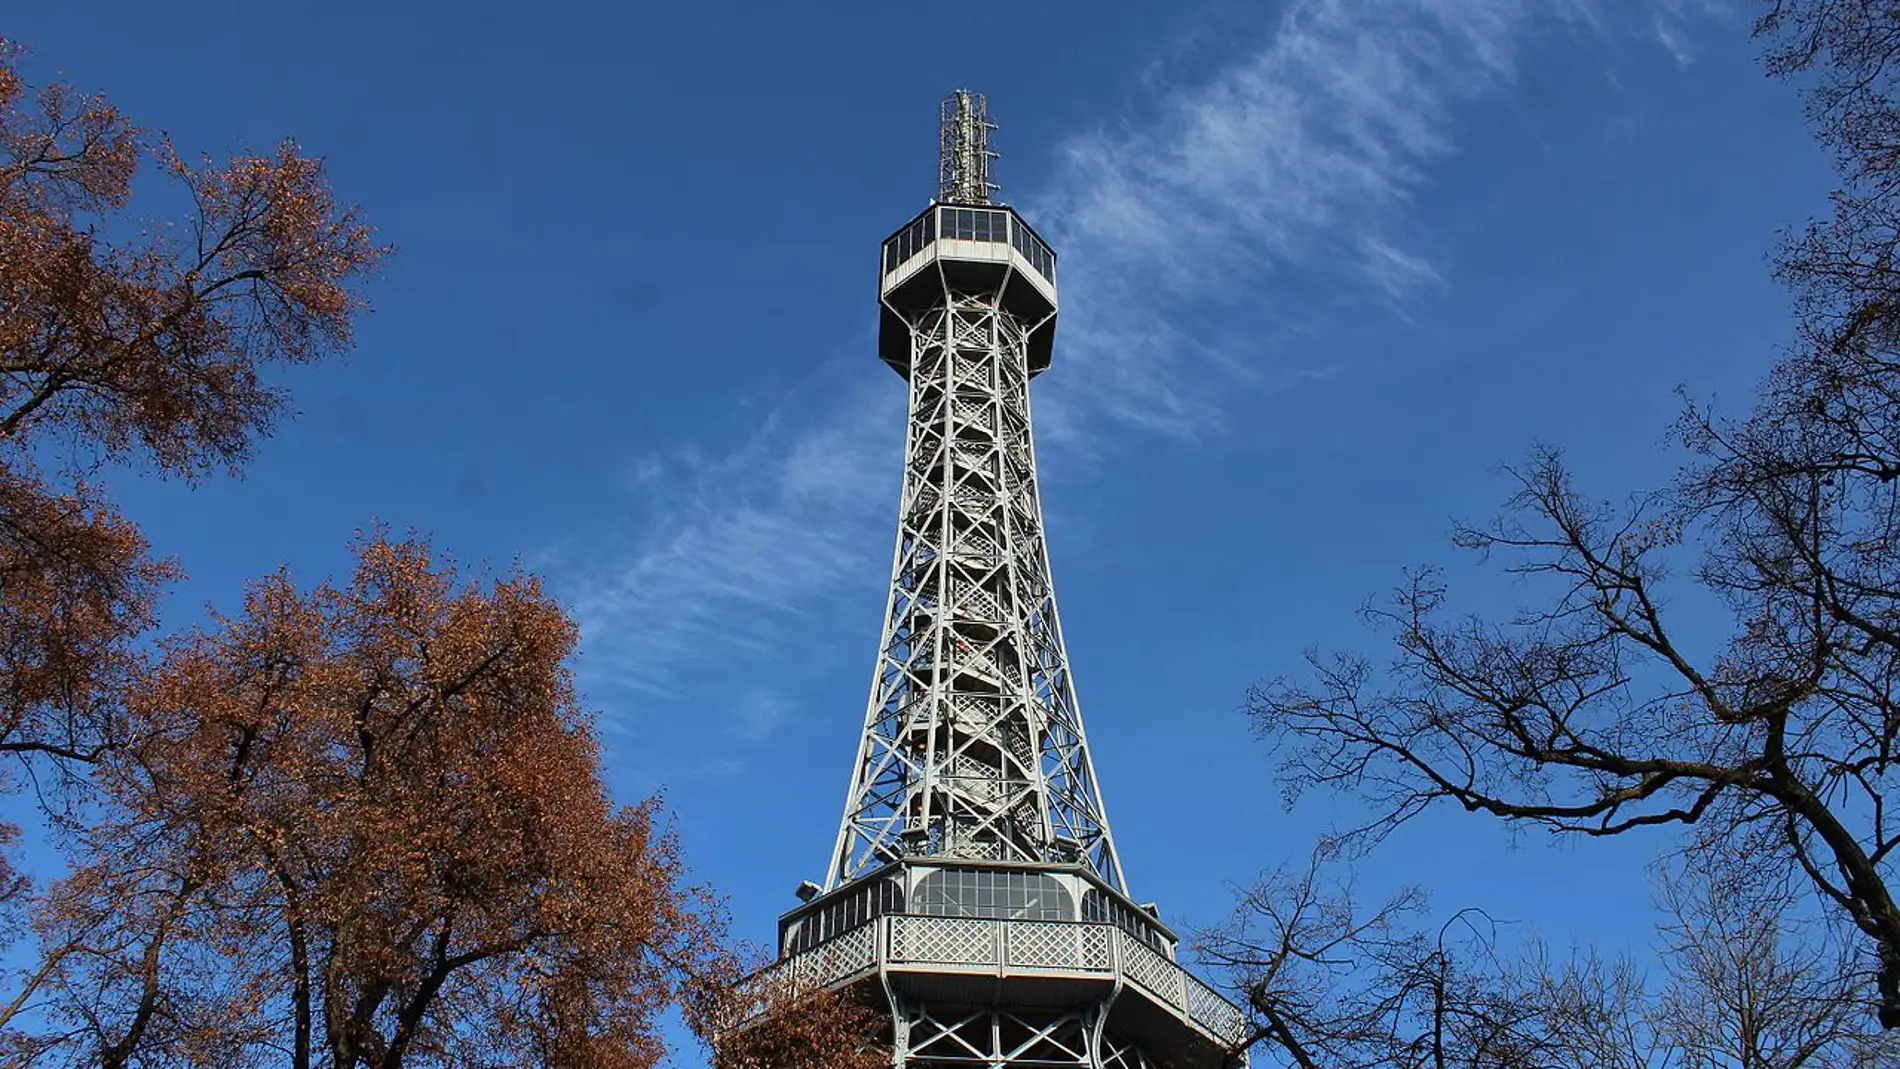 Torre de Observación de Petřín: historia de la torre de Praga que recuerda a la Torre Eiffel